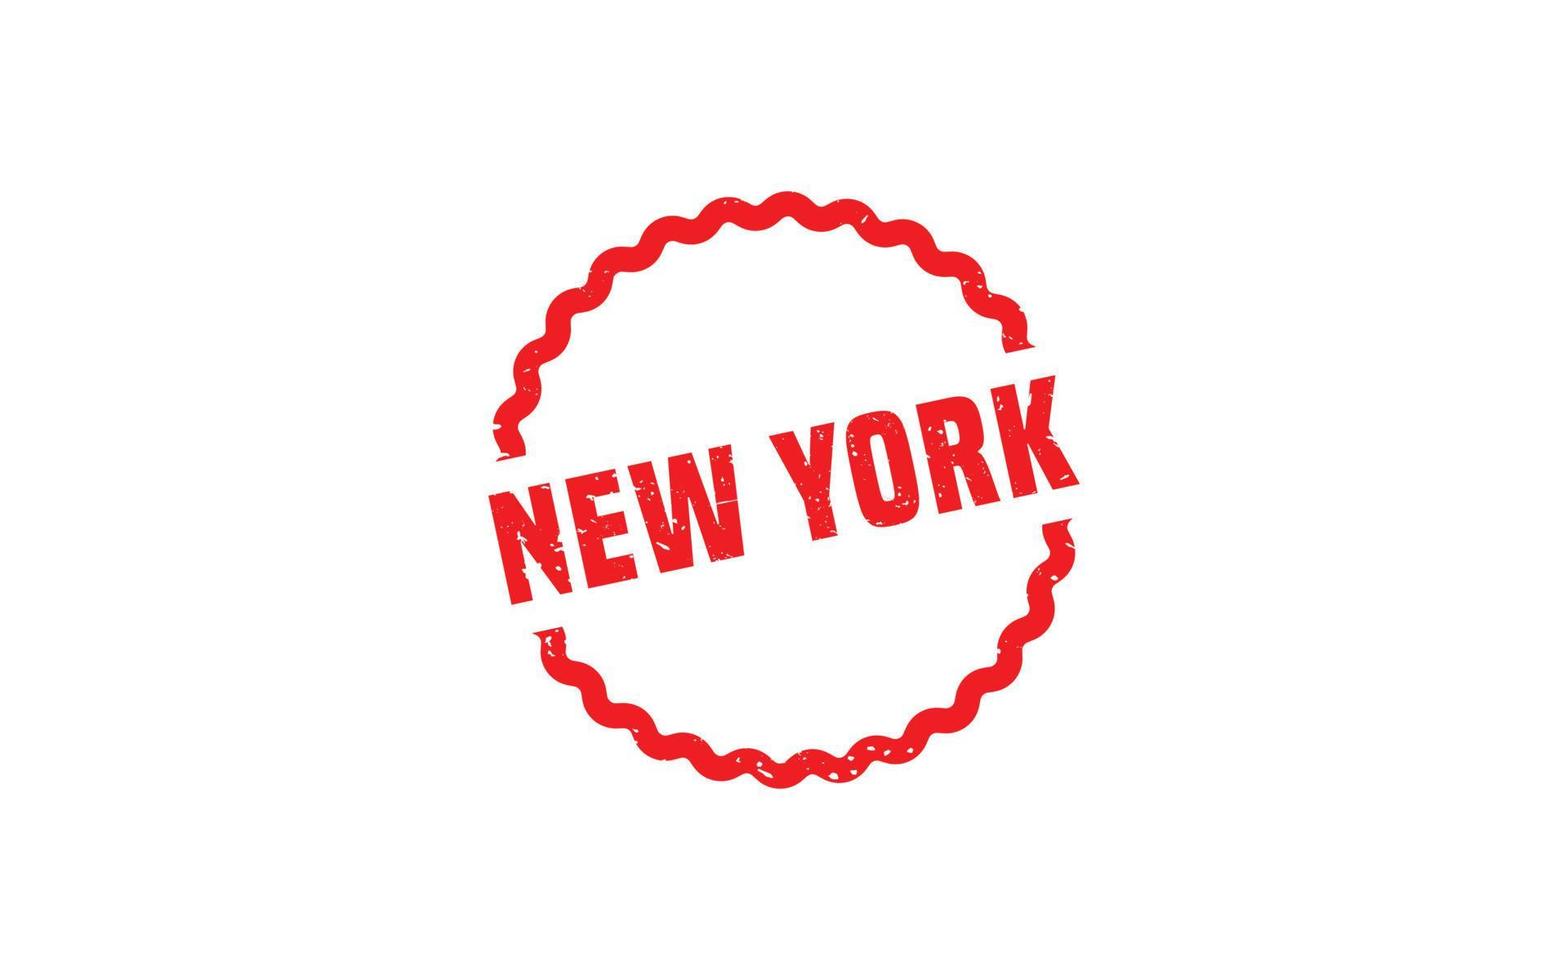 texture de timbre en caoutchouc new york avec style grunge sur fond blanc vecteur